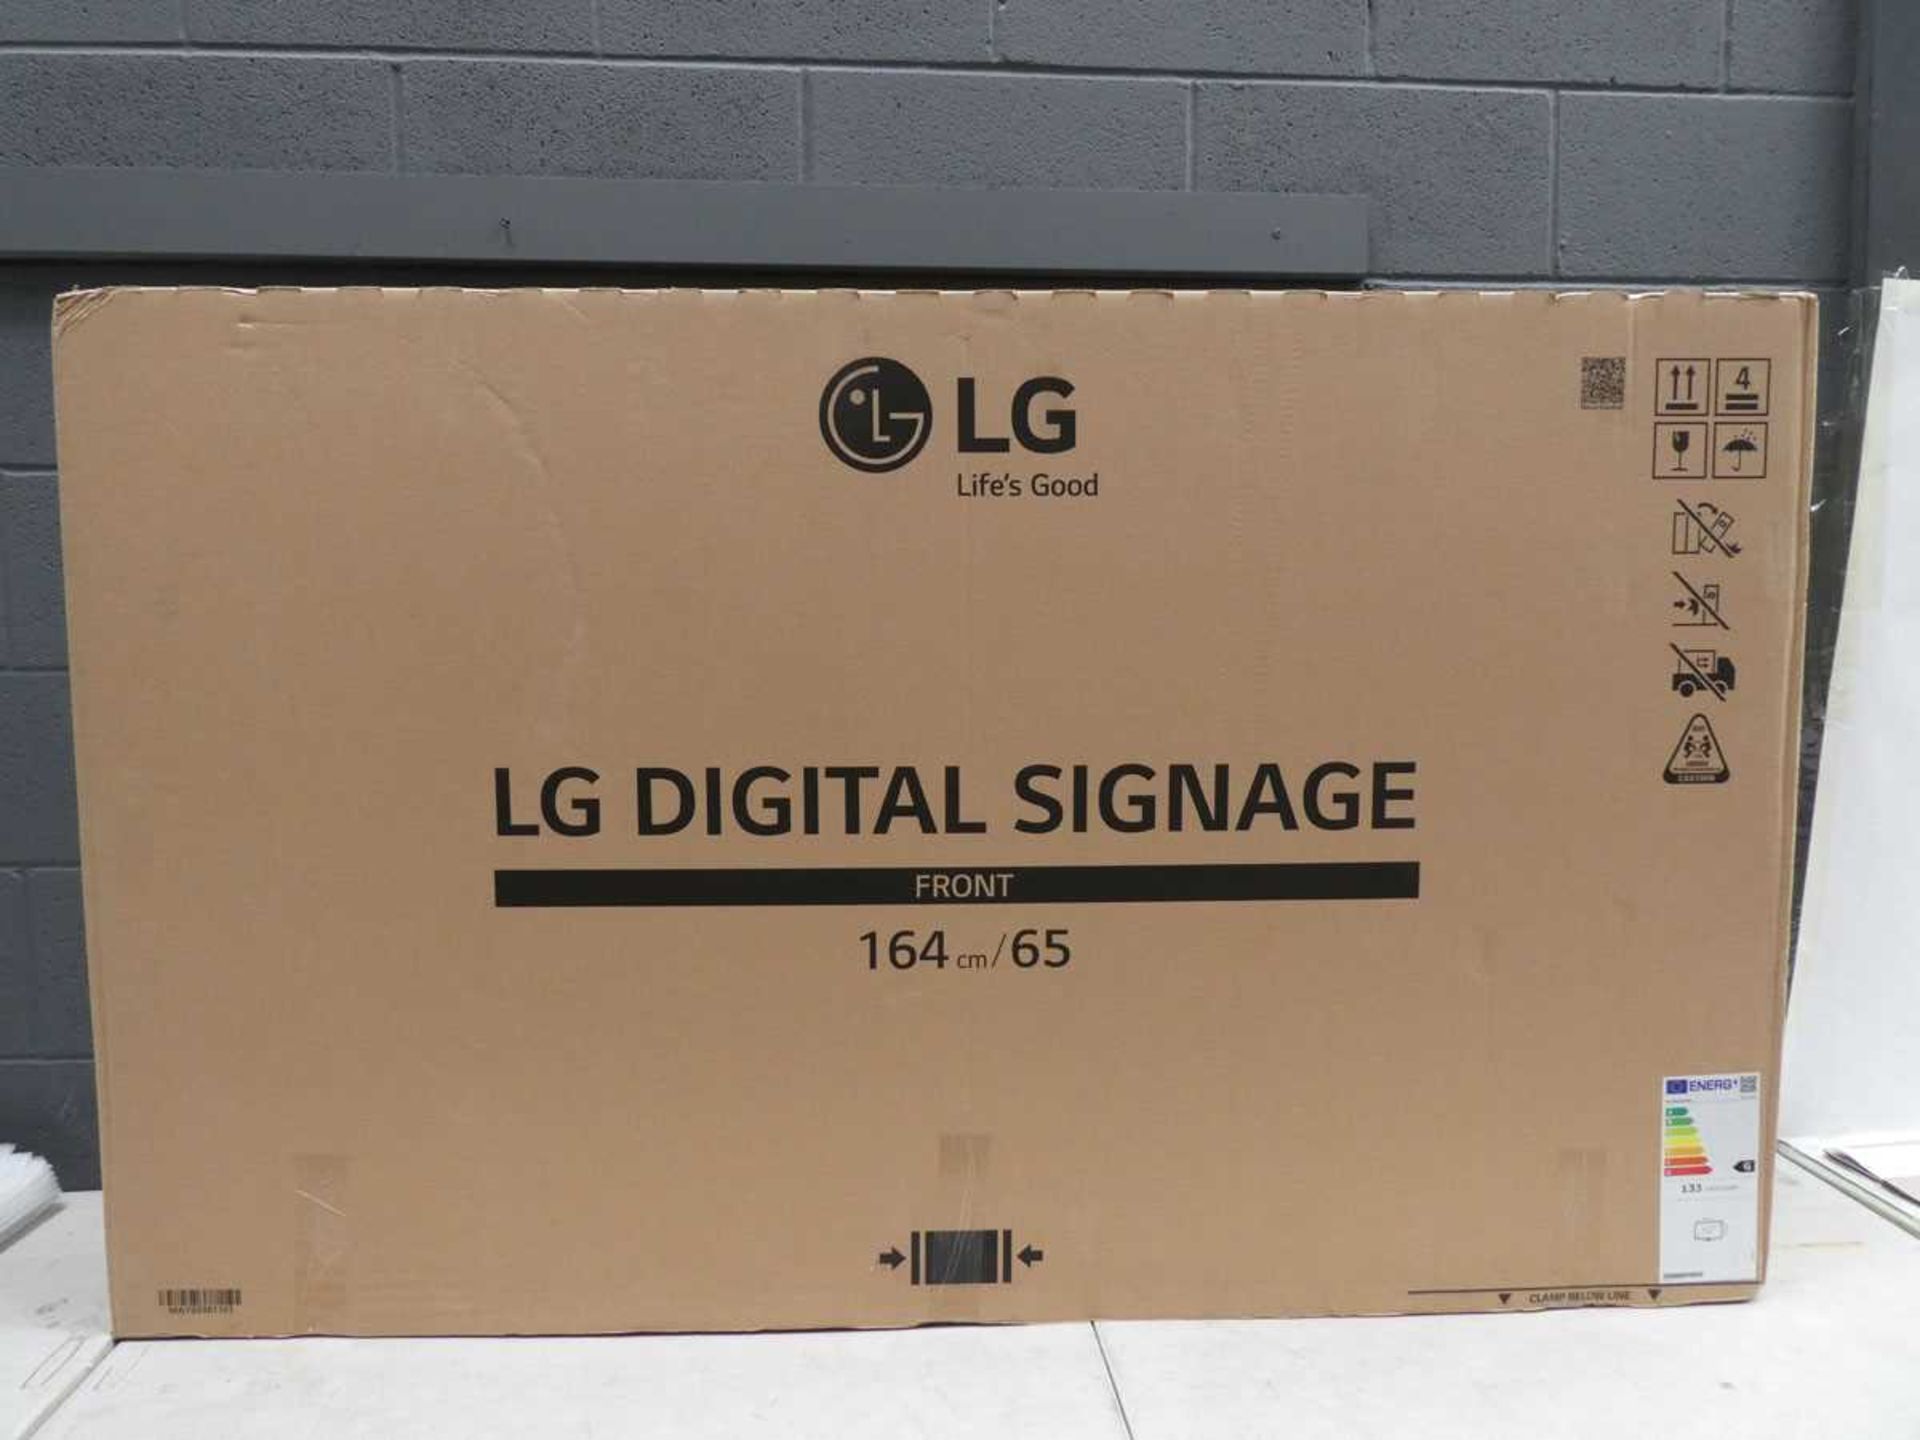 LG Model 65UM3DG 65" Digital Signage Display 4K UHD LED Monitor with detachable remote sensor,